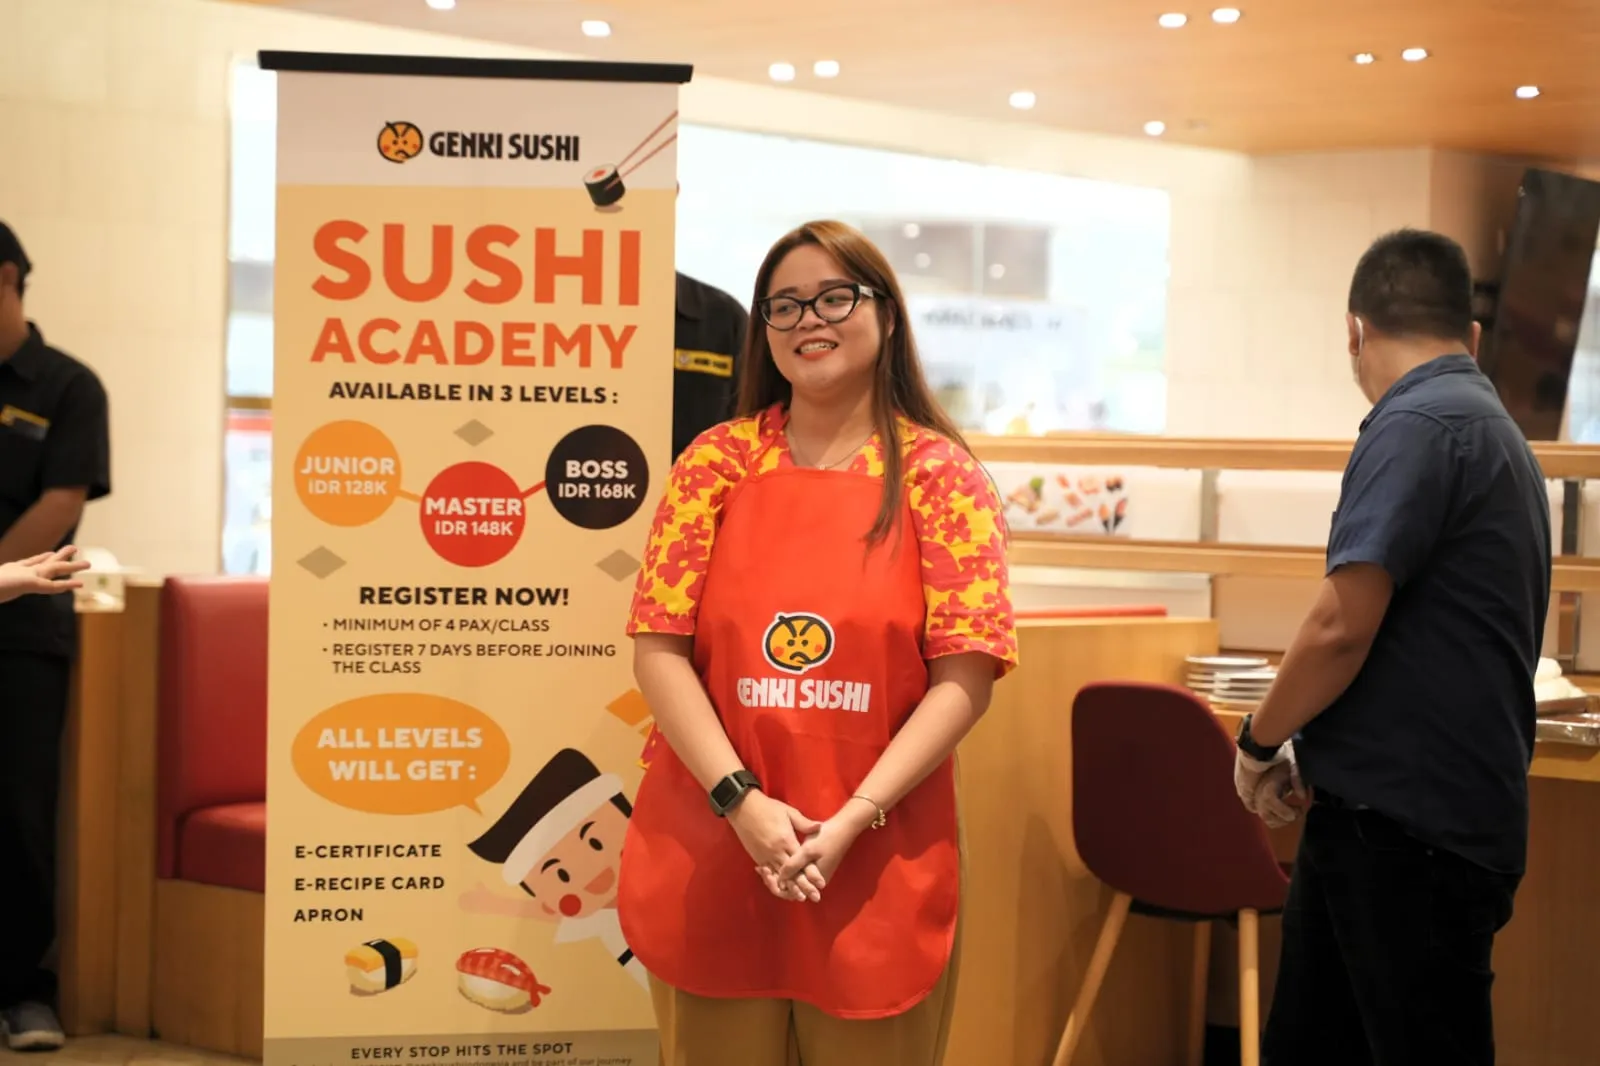 Genki Sushi Luncurkan Sushi Academy, Tarif Mulai Rp128 Ribu